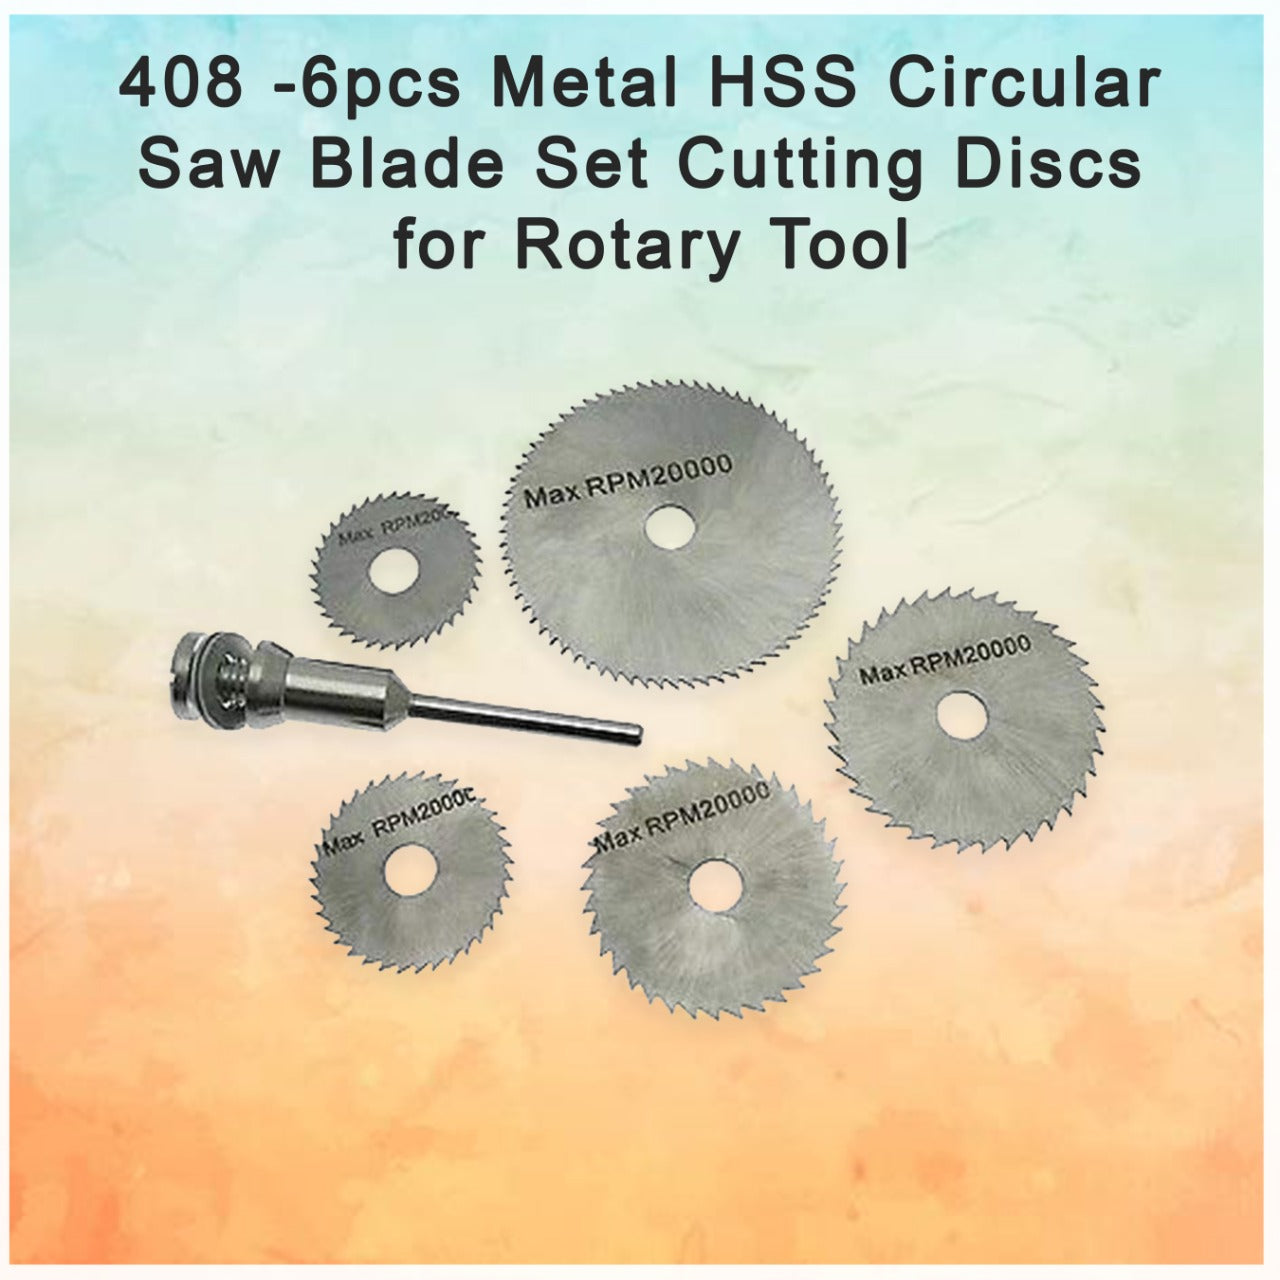 408 -6pcs Metal HSS Circular Saw Blade Set Cutting Discs for Rotary Tool JK Trends